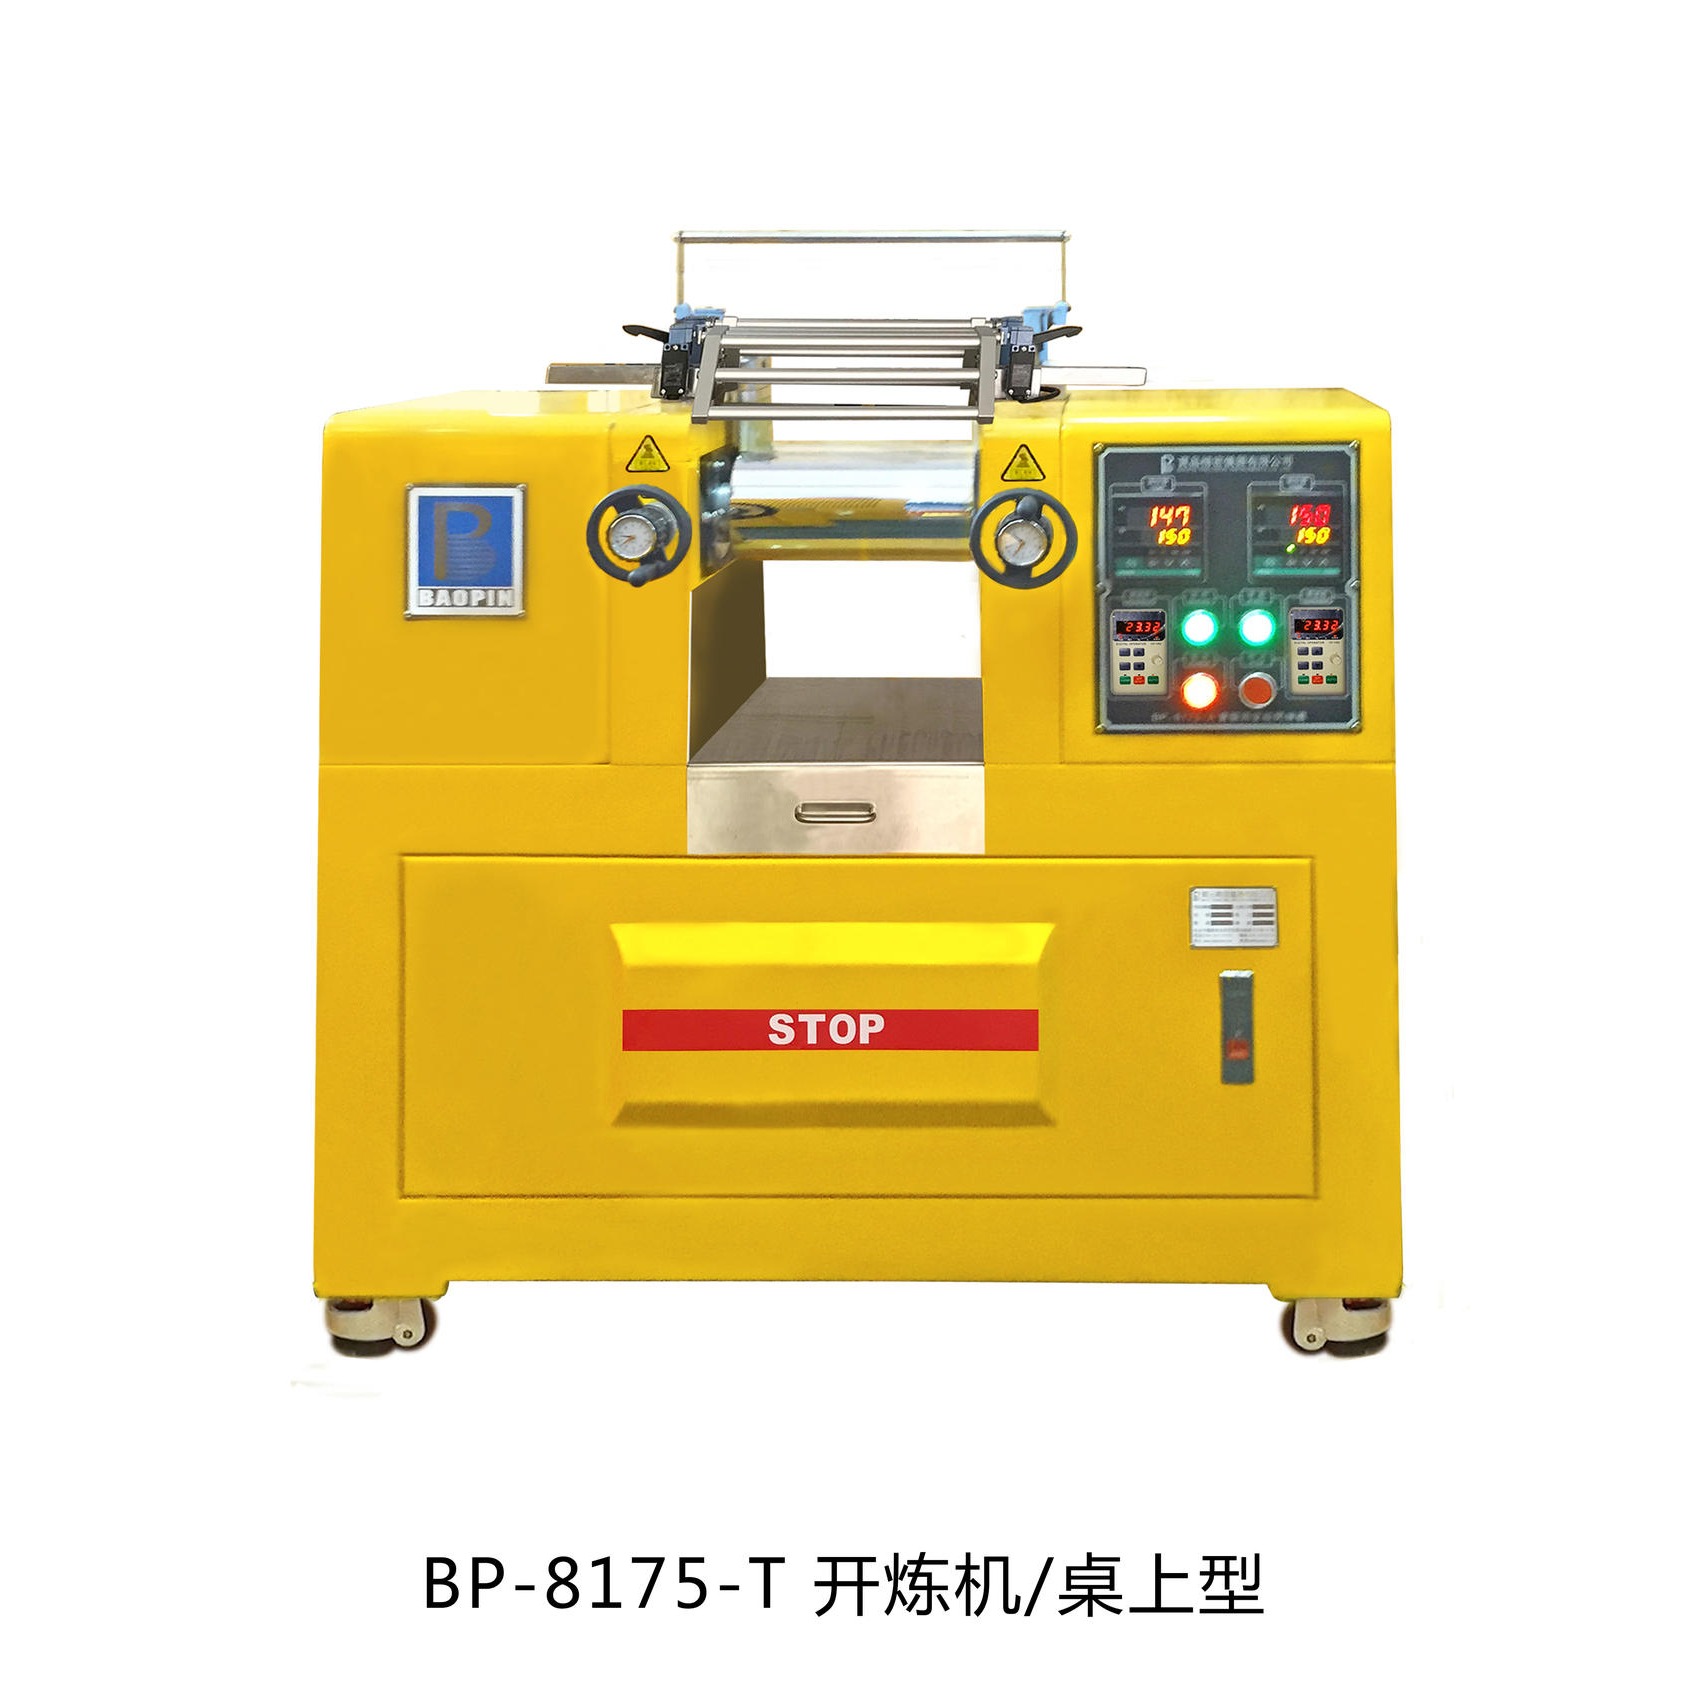 桌上型开炼机 宝品BP-8175-T 开炼机 橡胶开炼机